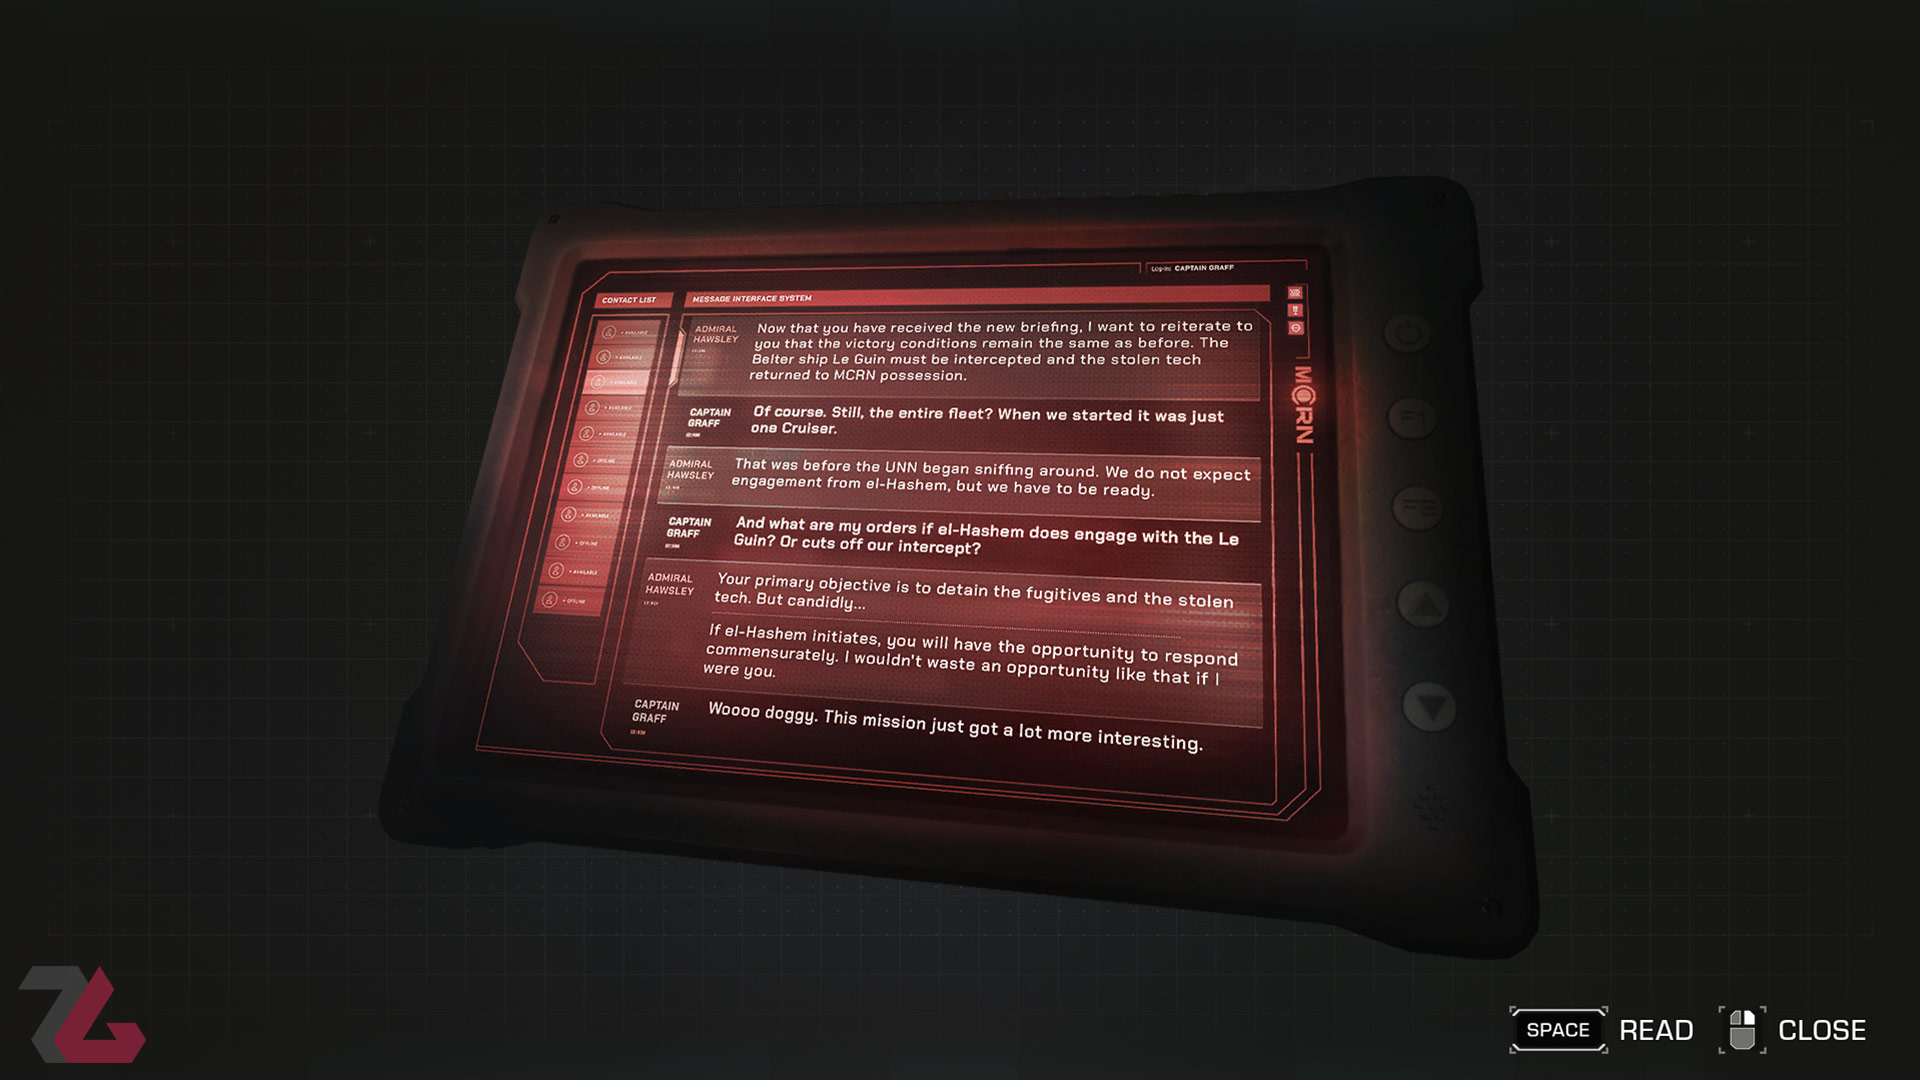 نوشته های به‌جا مانده از افراد سفینه نابودشده در قسمت دوم بازی اکسپنس، محصول استودیو تل تیل